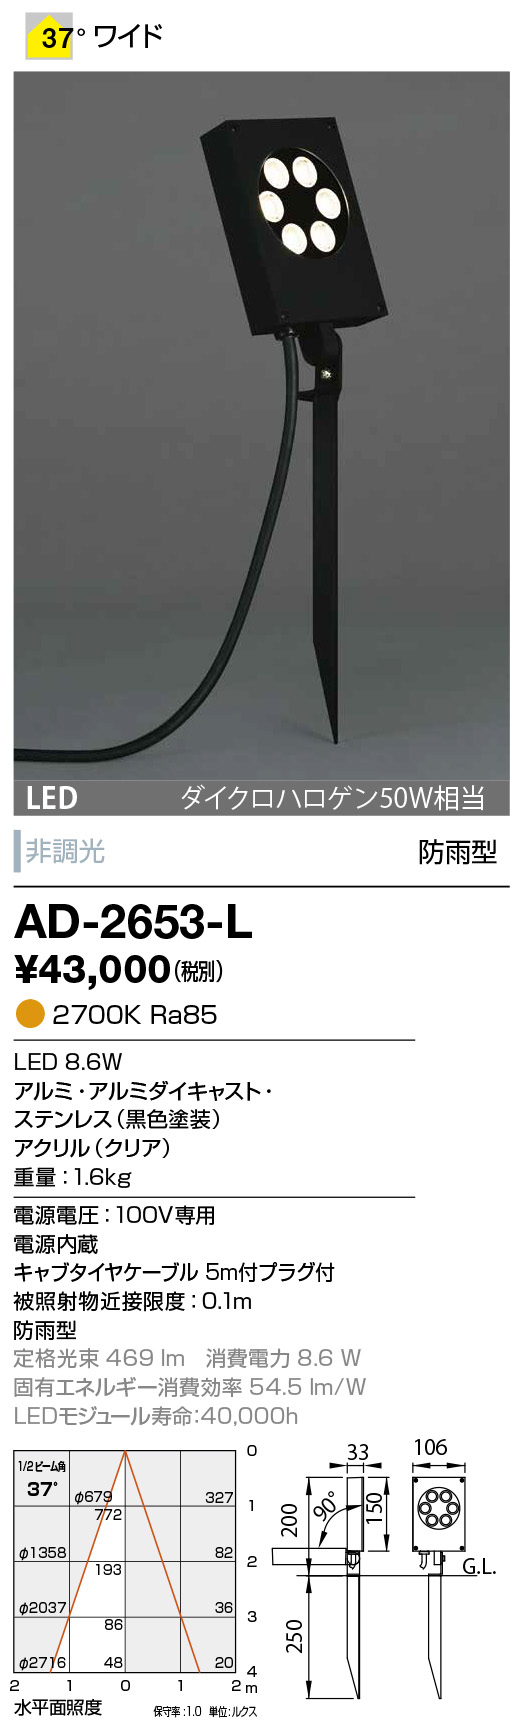 AD-2653-L(山田照明) 商品詳細 ～ 照明器具・換気扇他、電設資材販売の